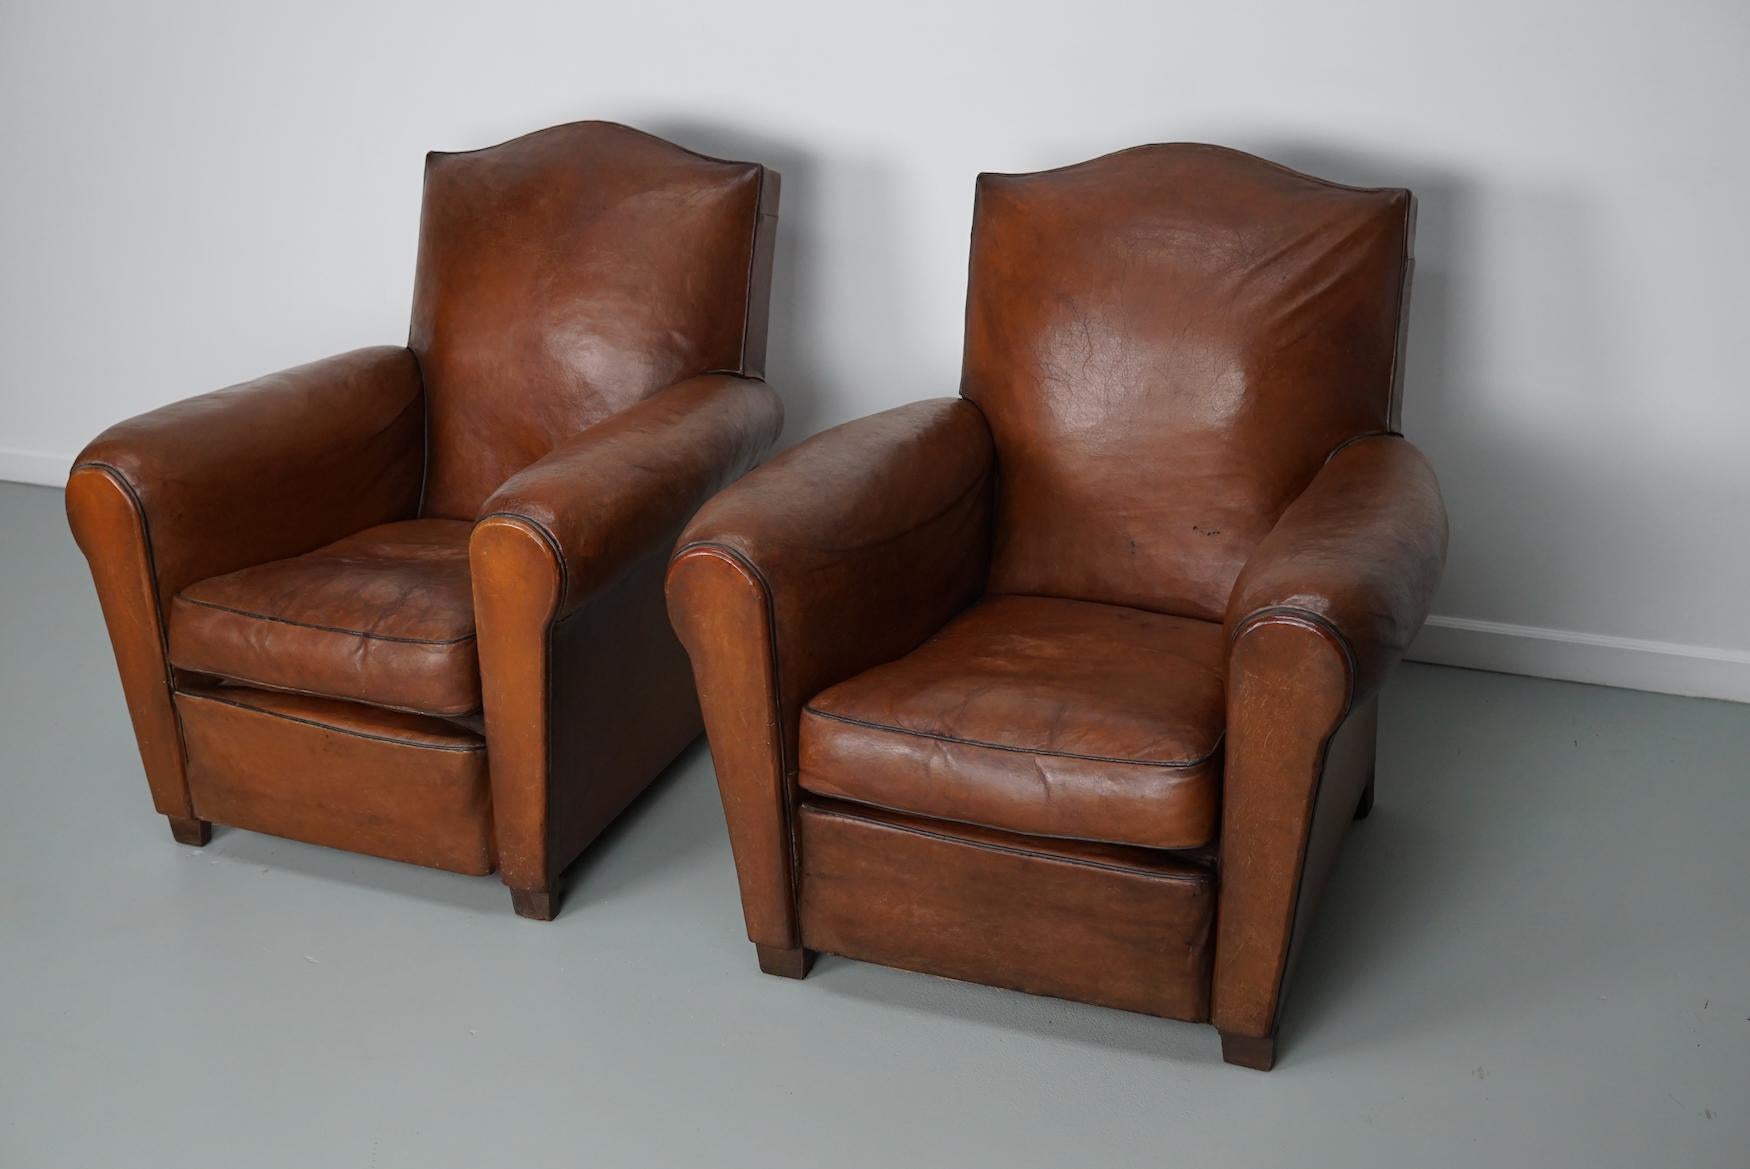 Diese Clubsessel wurden in den 1940er Jahren in Frankreich entworfen und hergestellt. Die Stühle sind aus cognacfarbenem Leder gefertigt, das mit Metallstiften zusammengehalten wird und auf Holzbeinen steht.